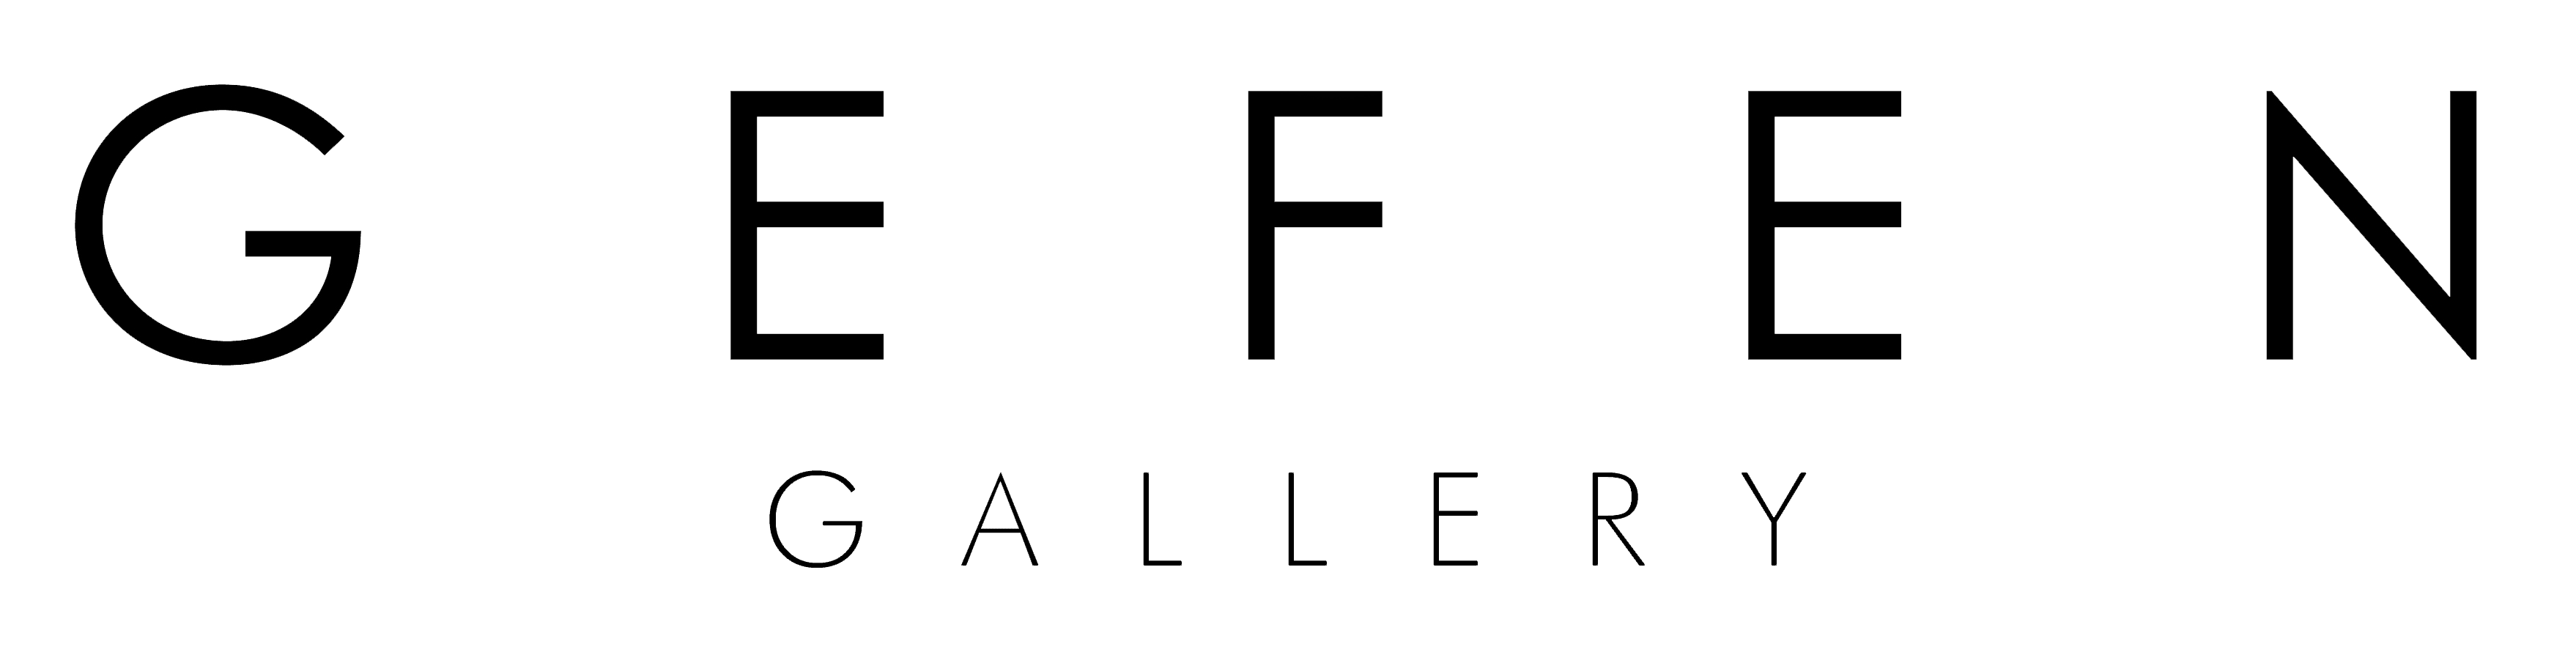 Gefen Gallery  company logo